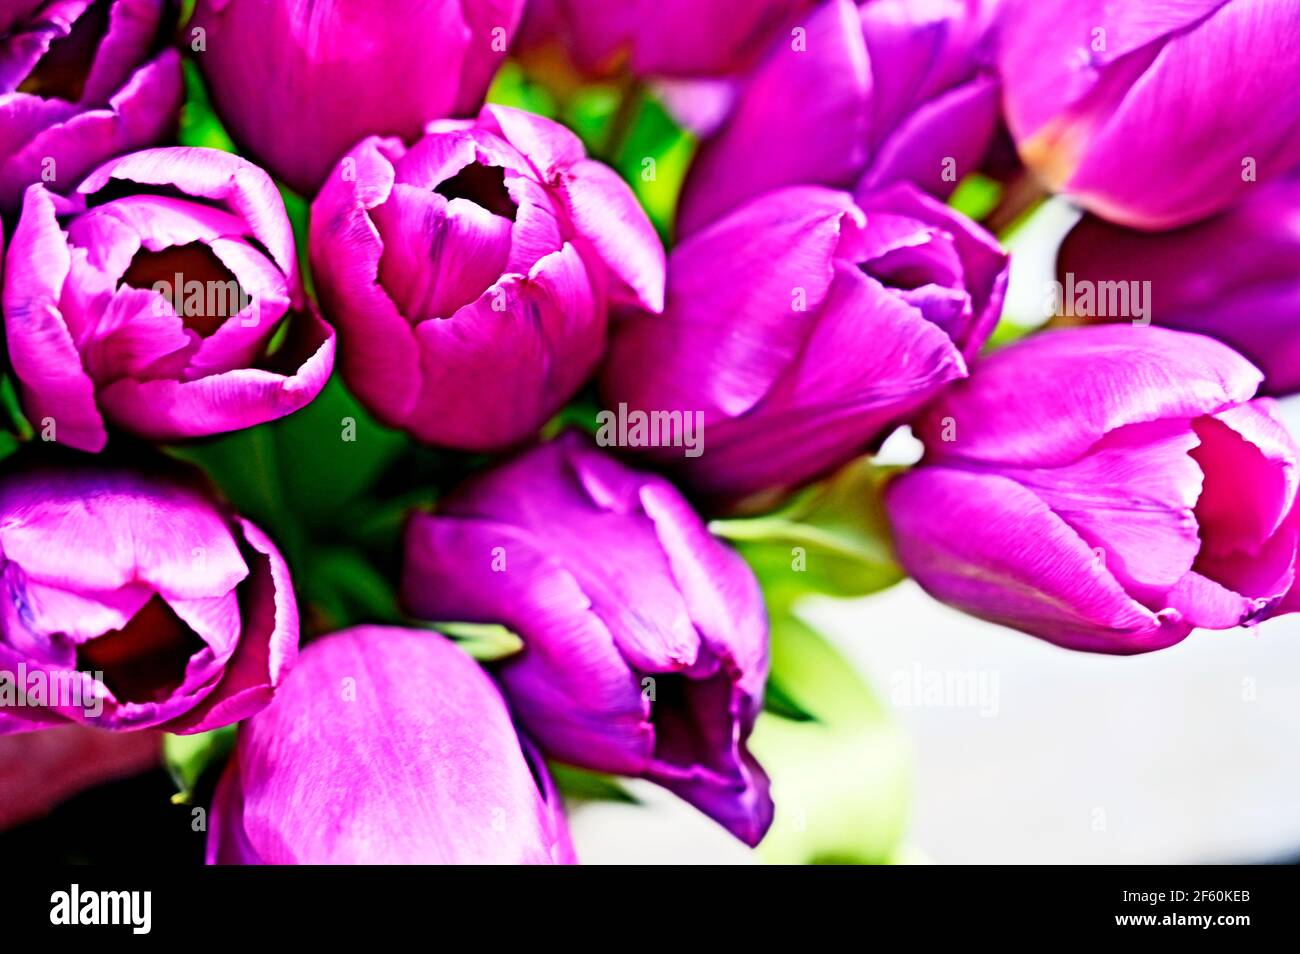 bunch of tulips; Tulpenstrauß Stock Photo